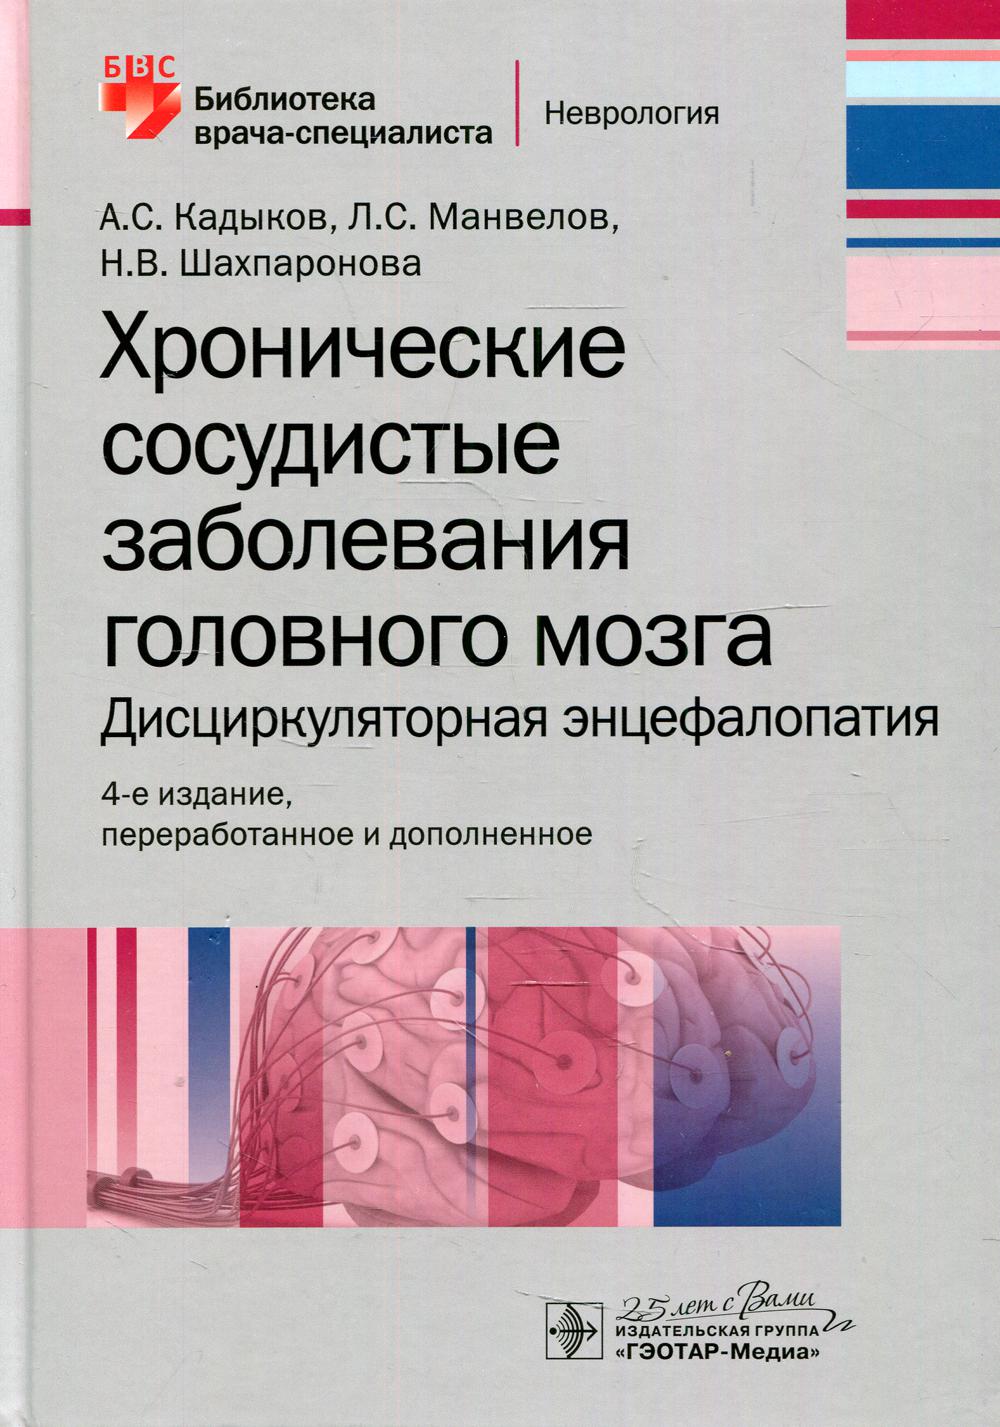 Хронические сосудистые заболевания головного мозга. Дисциркуляторная энцефалопатия. — 4-е изд., перераб. и доп. (Серия «Библиотека врача-специалиста»)